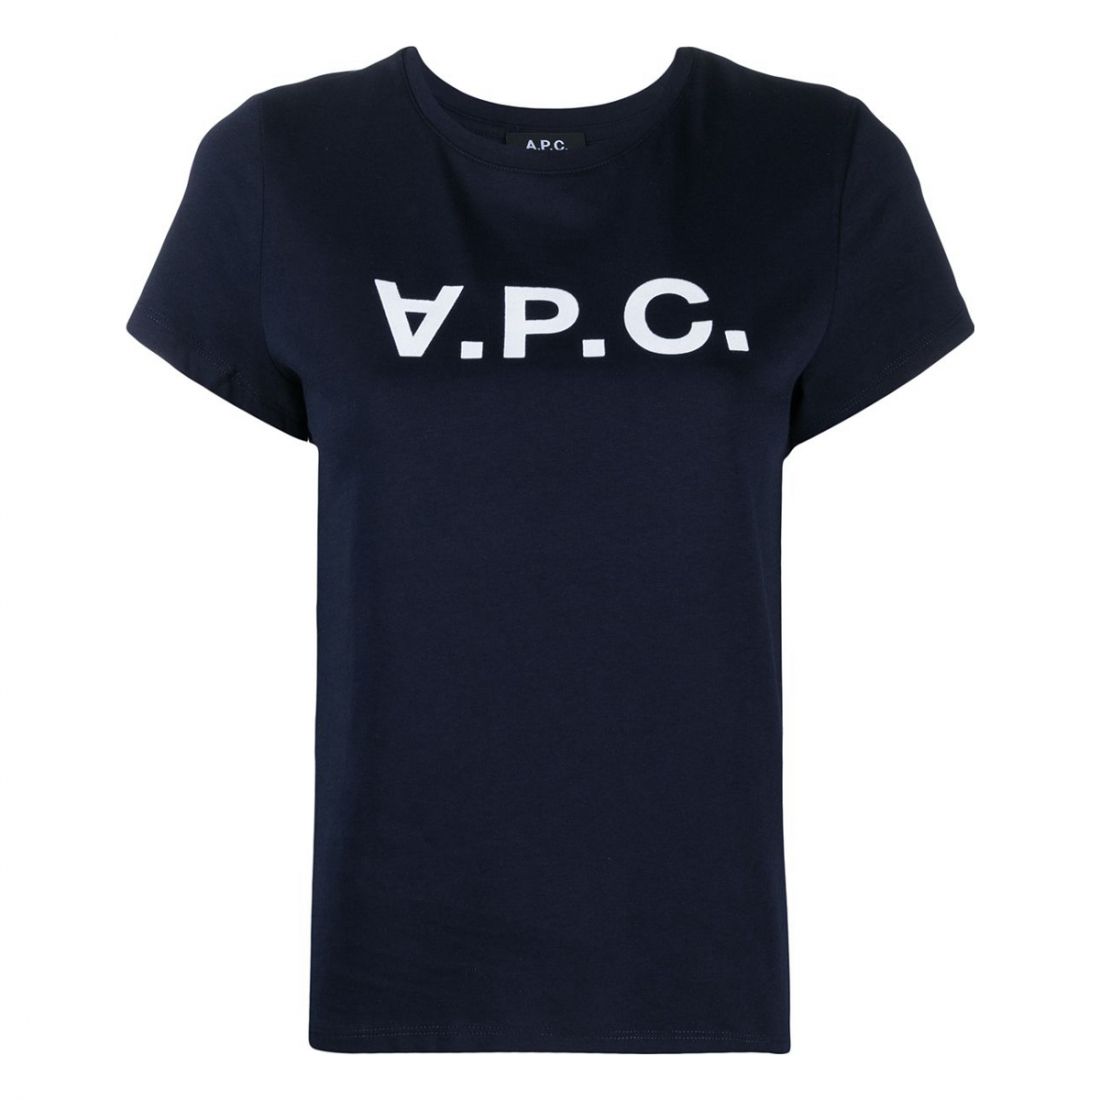 A.P.C. - T-shirt 'Logo' pour Femmes